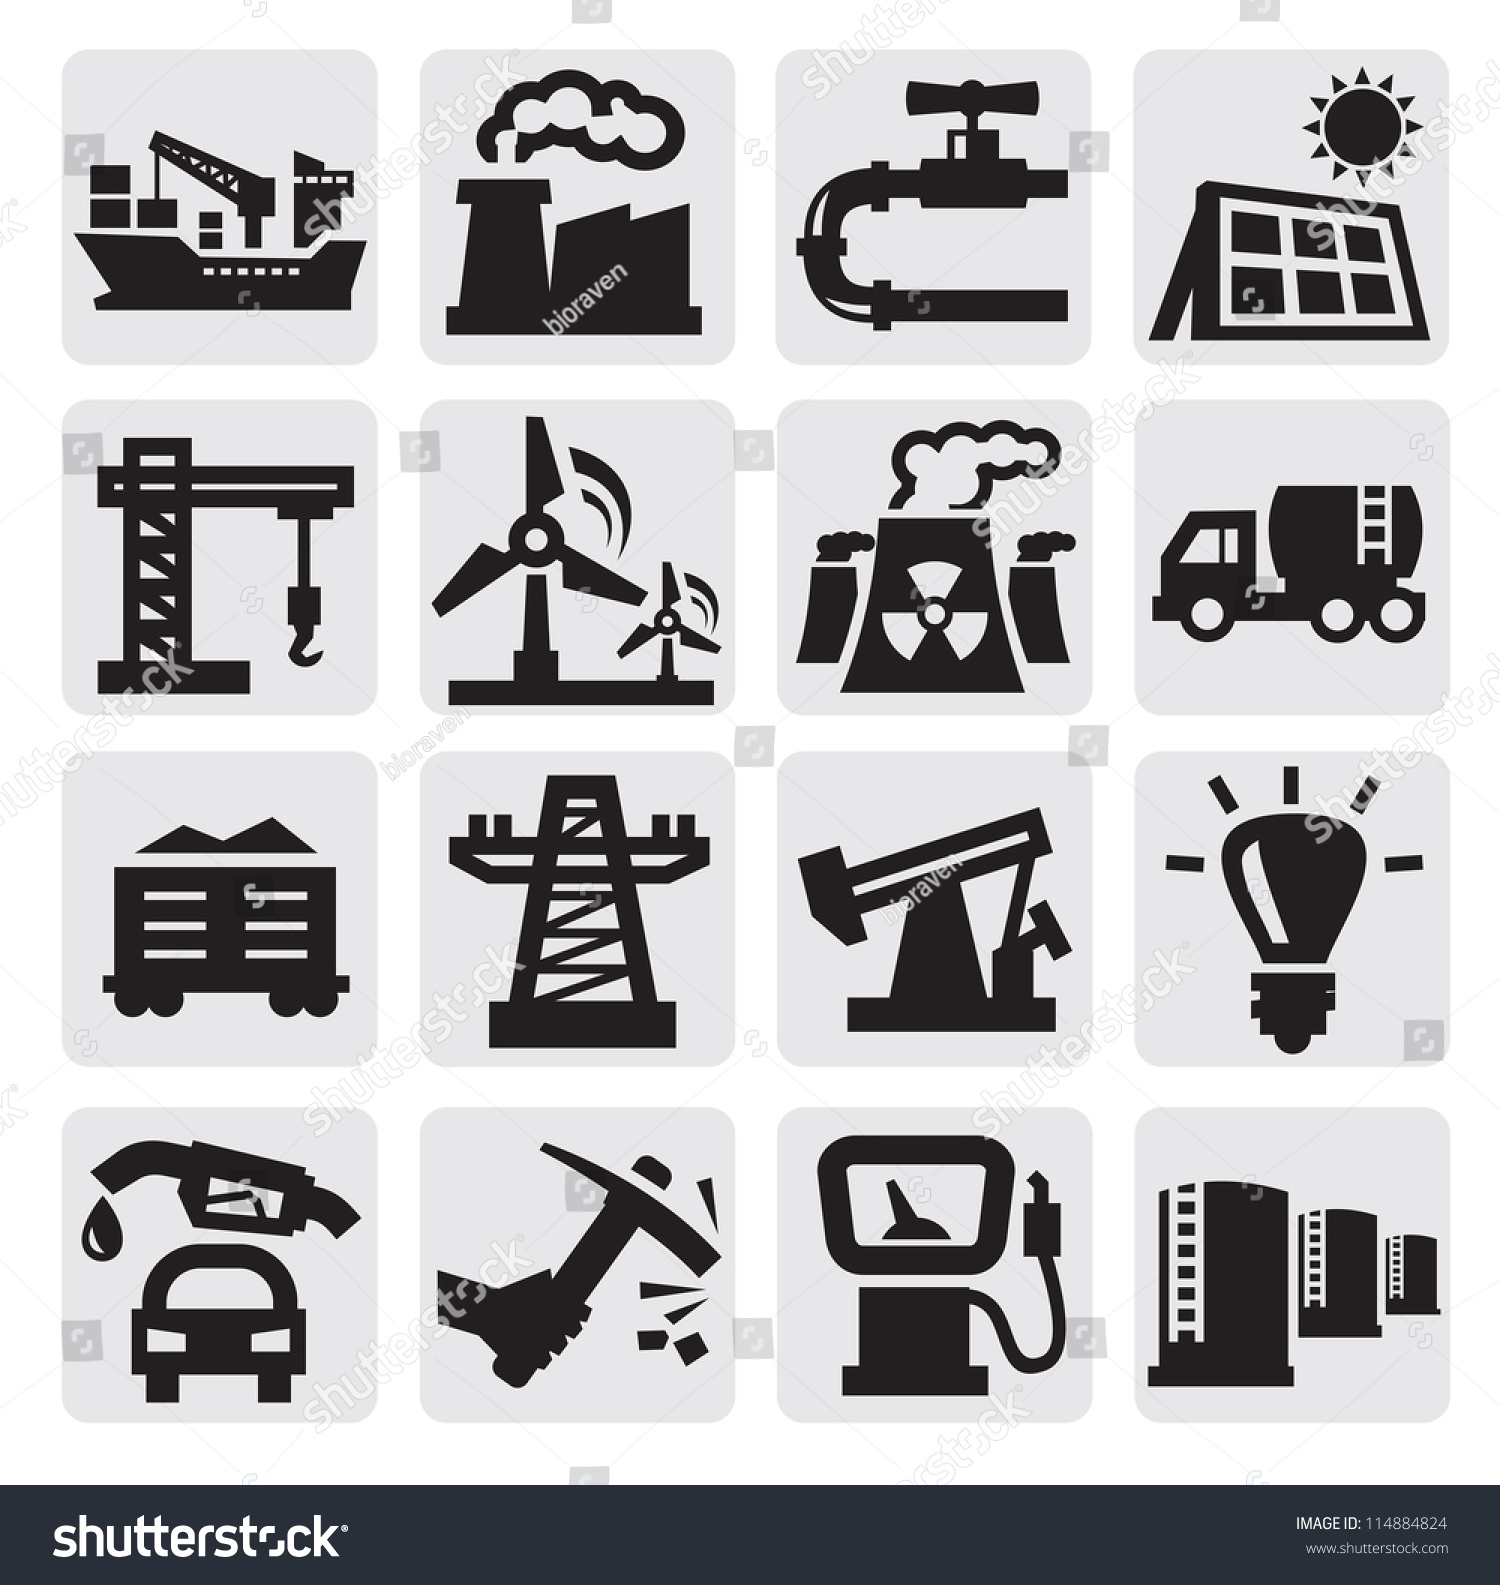 Знаки промышленности окружающий мир 3. Иконки виды промышленности. Эмблемы разных отраслей промышленности. Значок добывающей промышленности. Значки для видов промышленности.